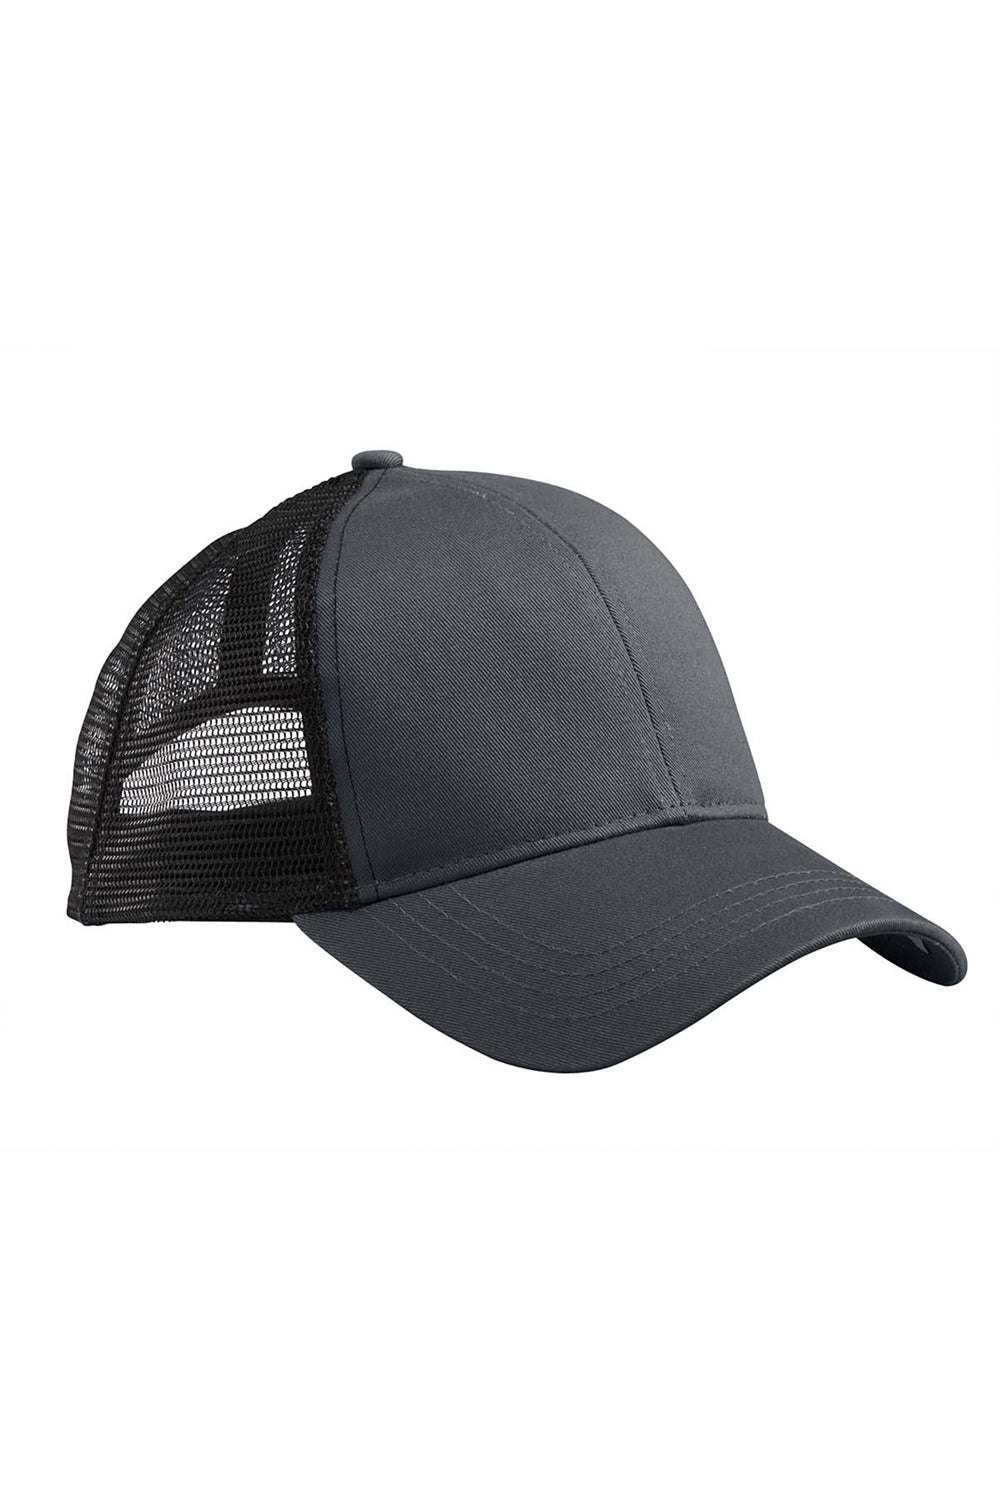 Econscious EC7070 Mens Adjustable Trucker Hat Charcoal Grey/Black Front